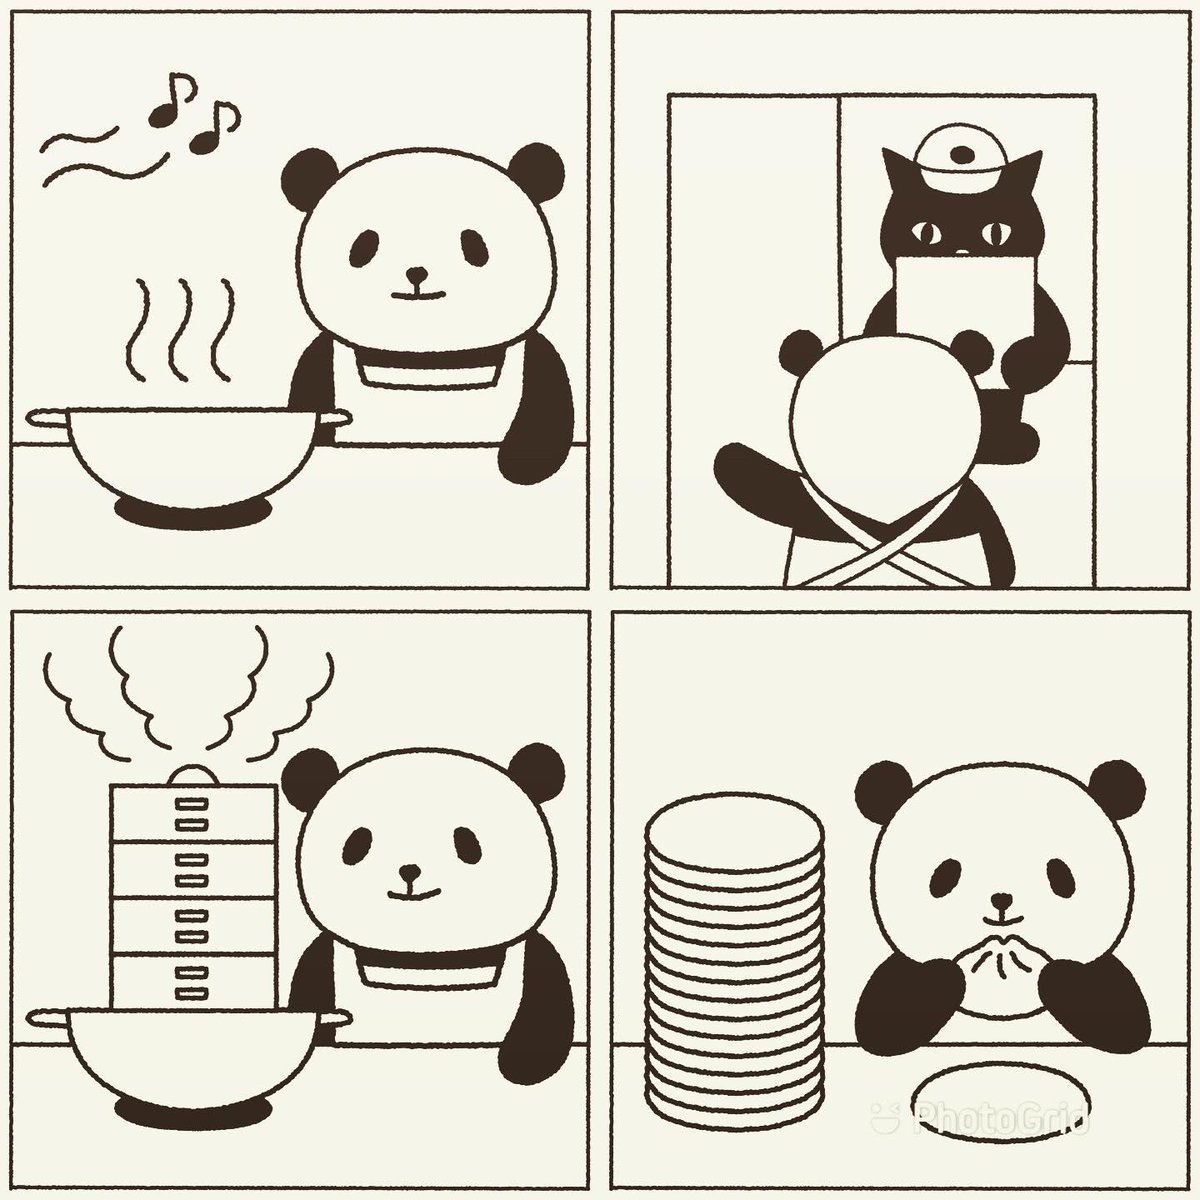 パンダのどすん على تويتر 中華街に行きたいな パンダ Panda 大熊猫 パンダイラスト ほっこり クスッと笑える 飲茶 点心 Dimsum